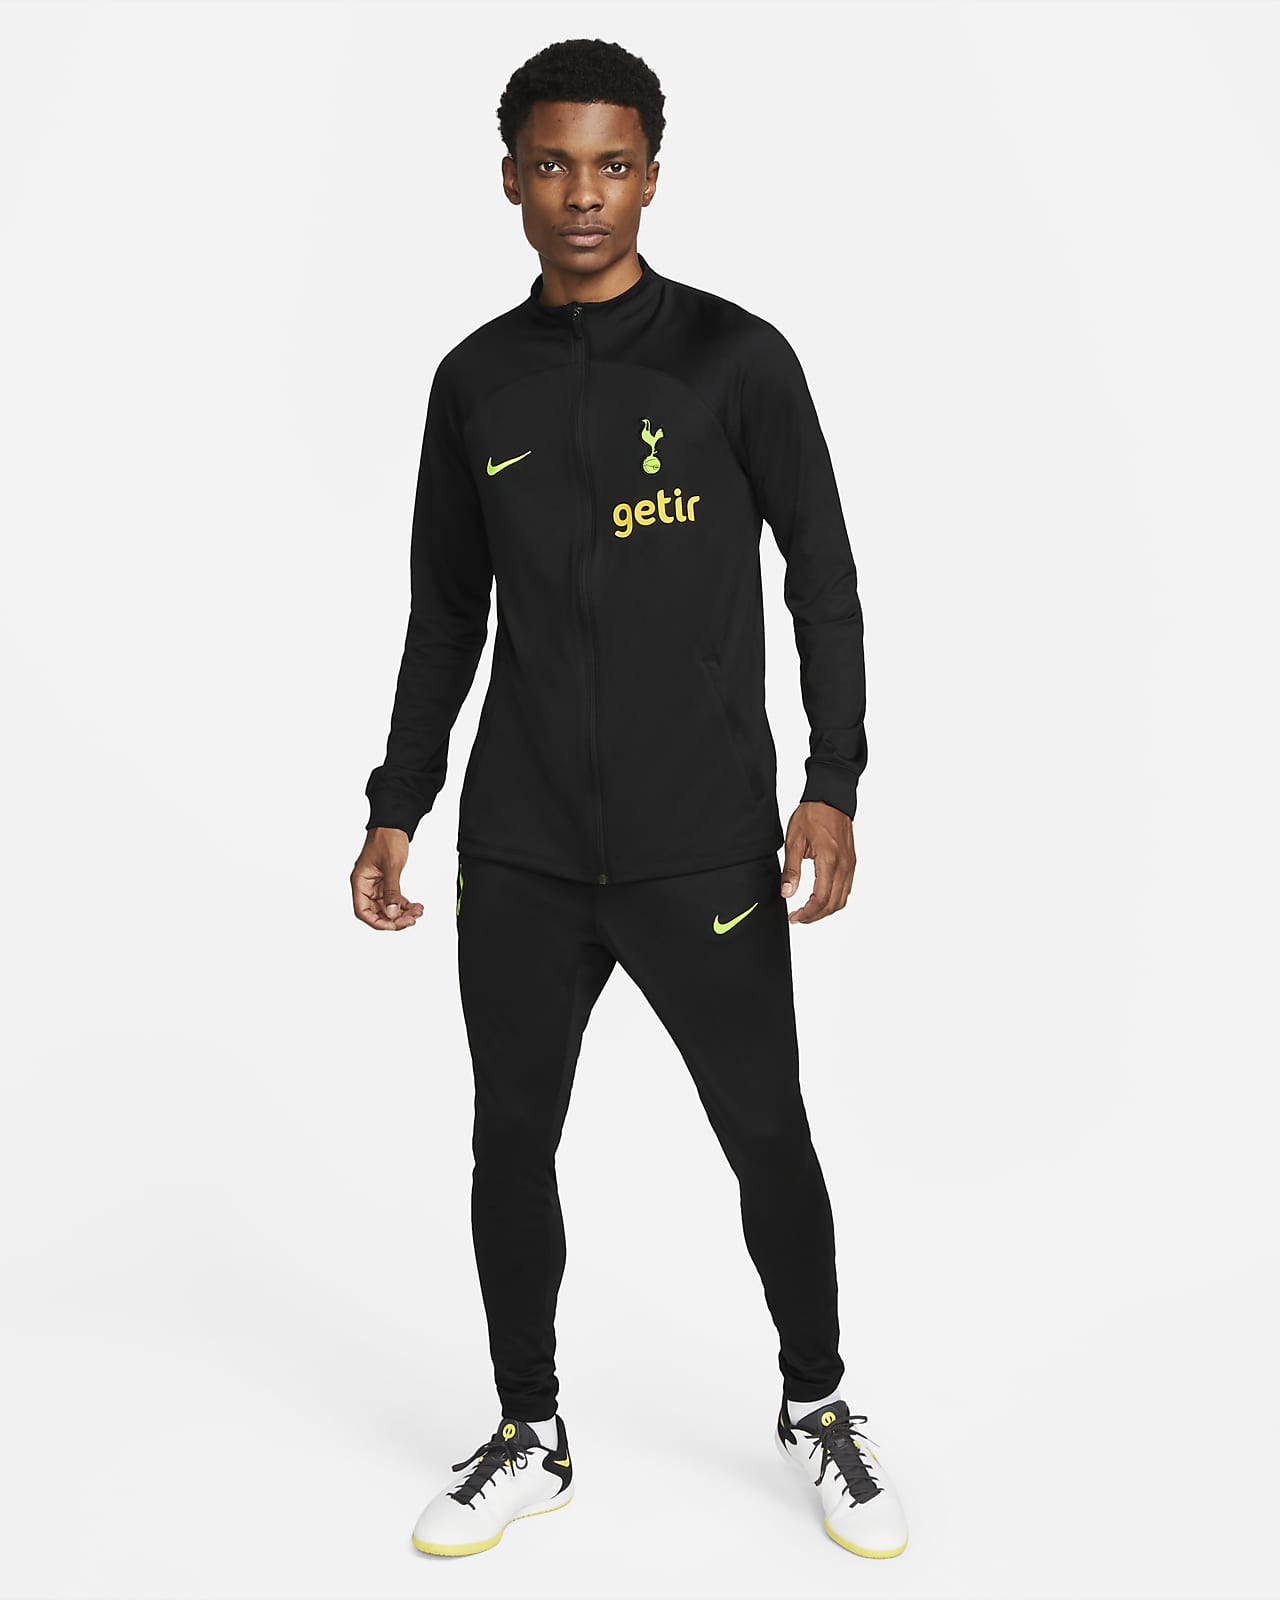 Tottenham Hotspur Strike deportivo de fútbol tejido Nike - Hombre. Nike ES